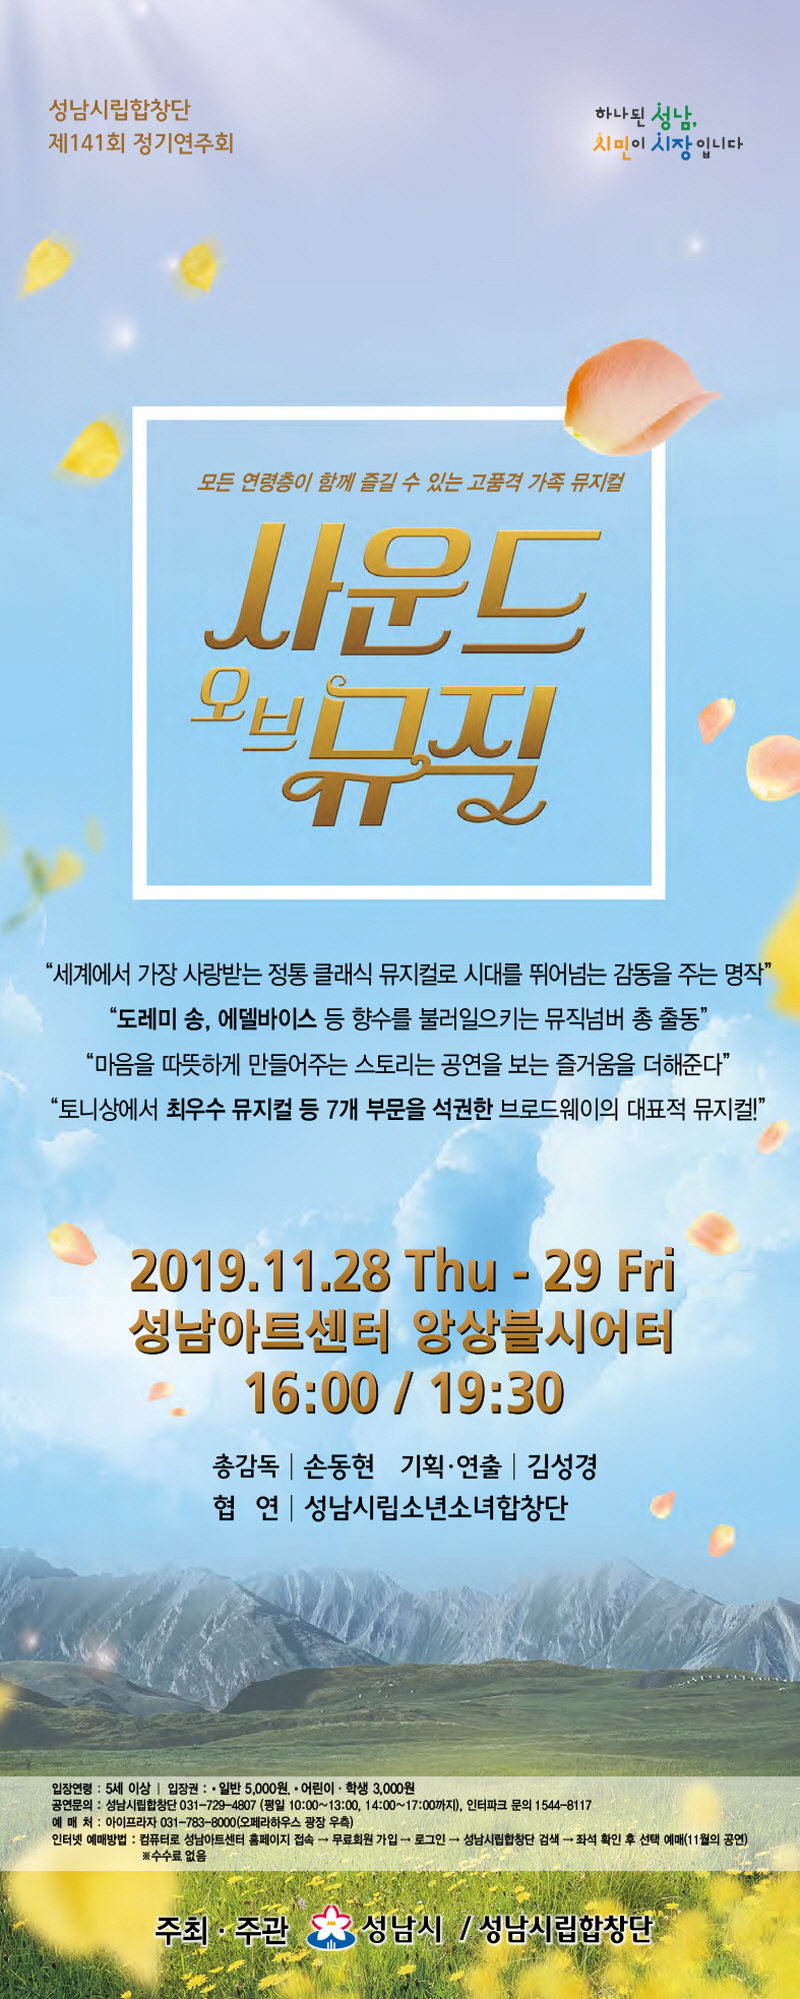 성남시립합창단 28~29일 ‘사운드 오브 뮤직’ 무대에